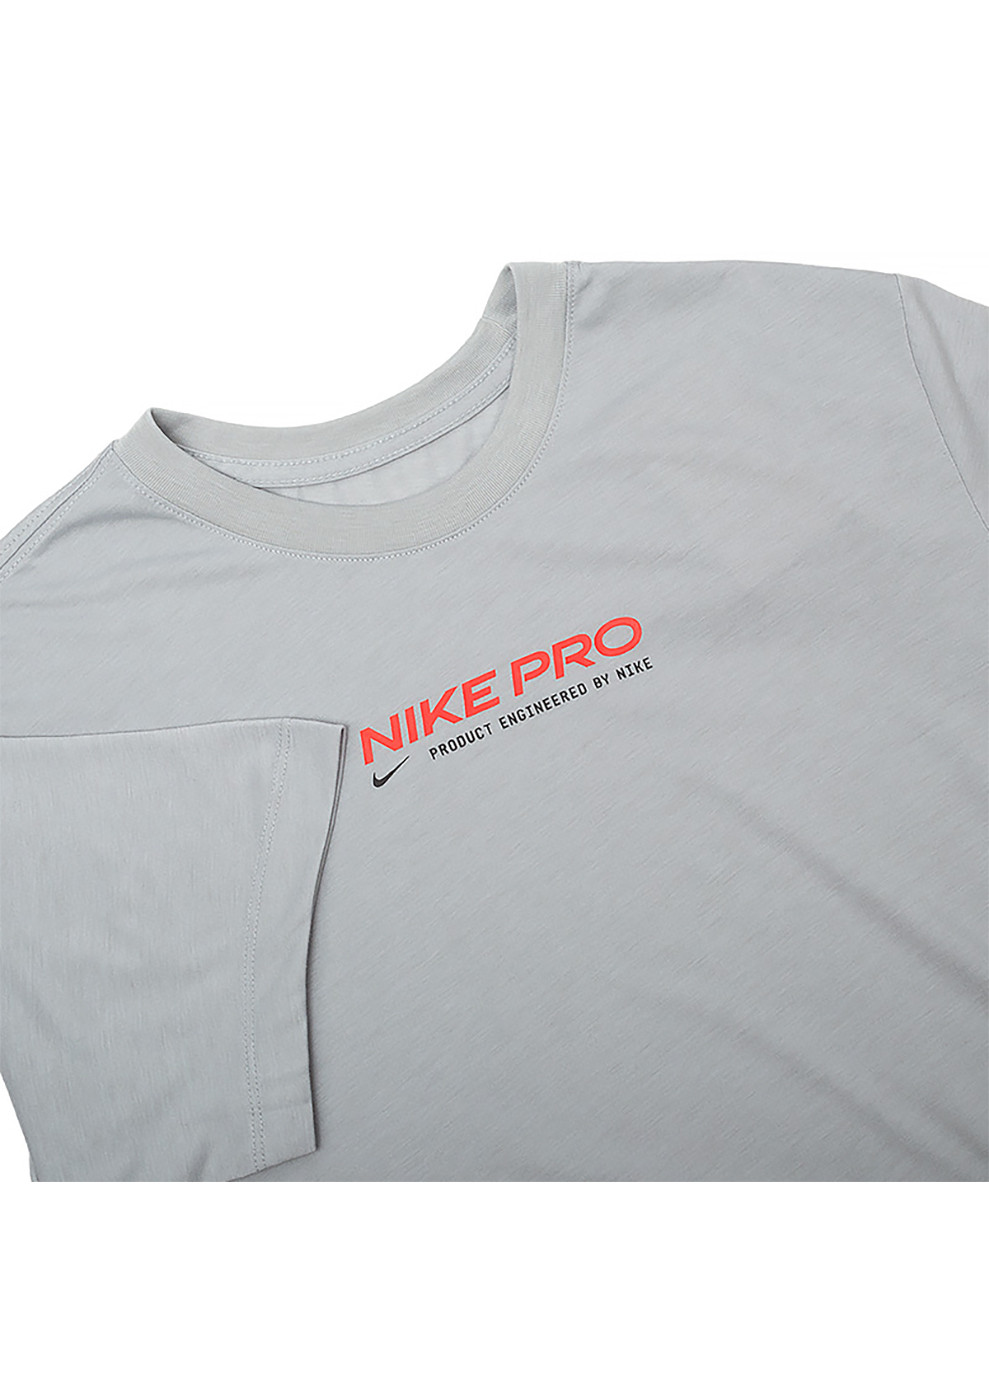 Сіра чоловіча футболка m nk df tee db nk pro 2 сірий s (dm5677-077 s) Nike